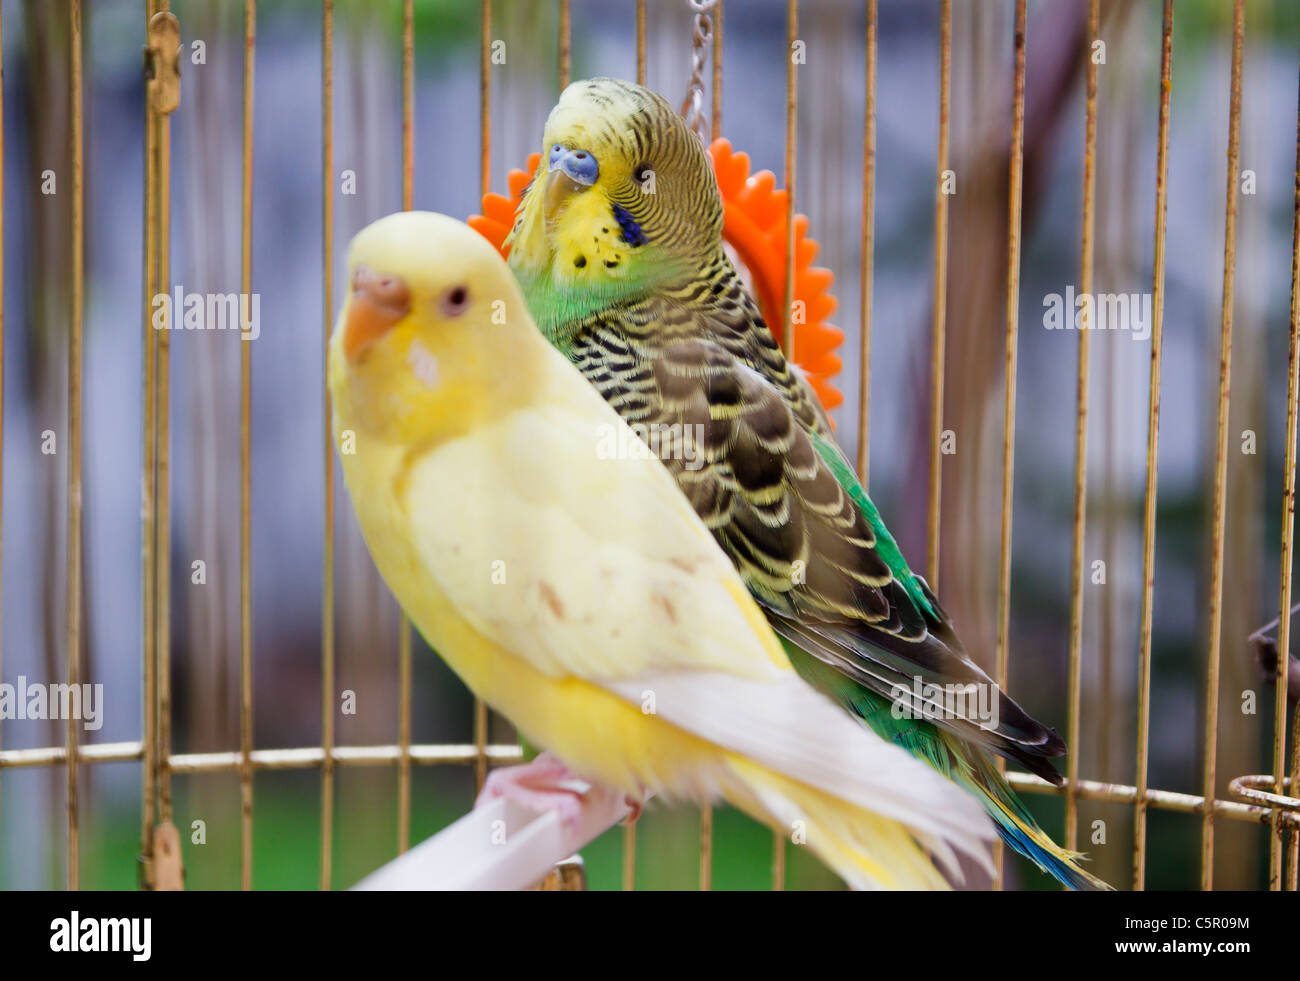 Jaune et vert de perroquets dans une cage Banque D'Images